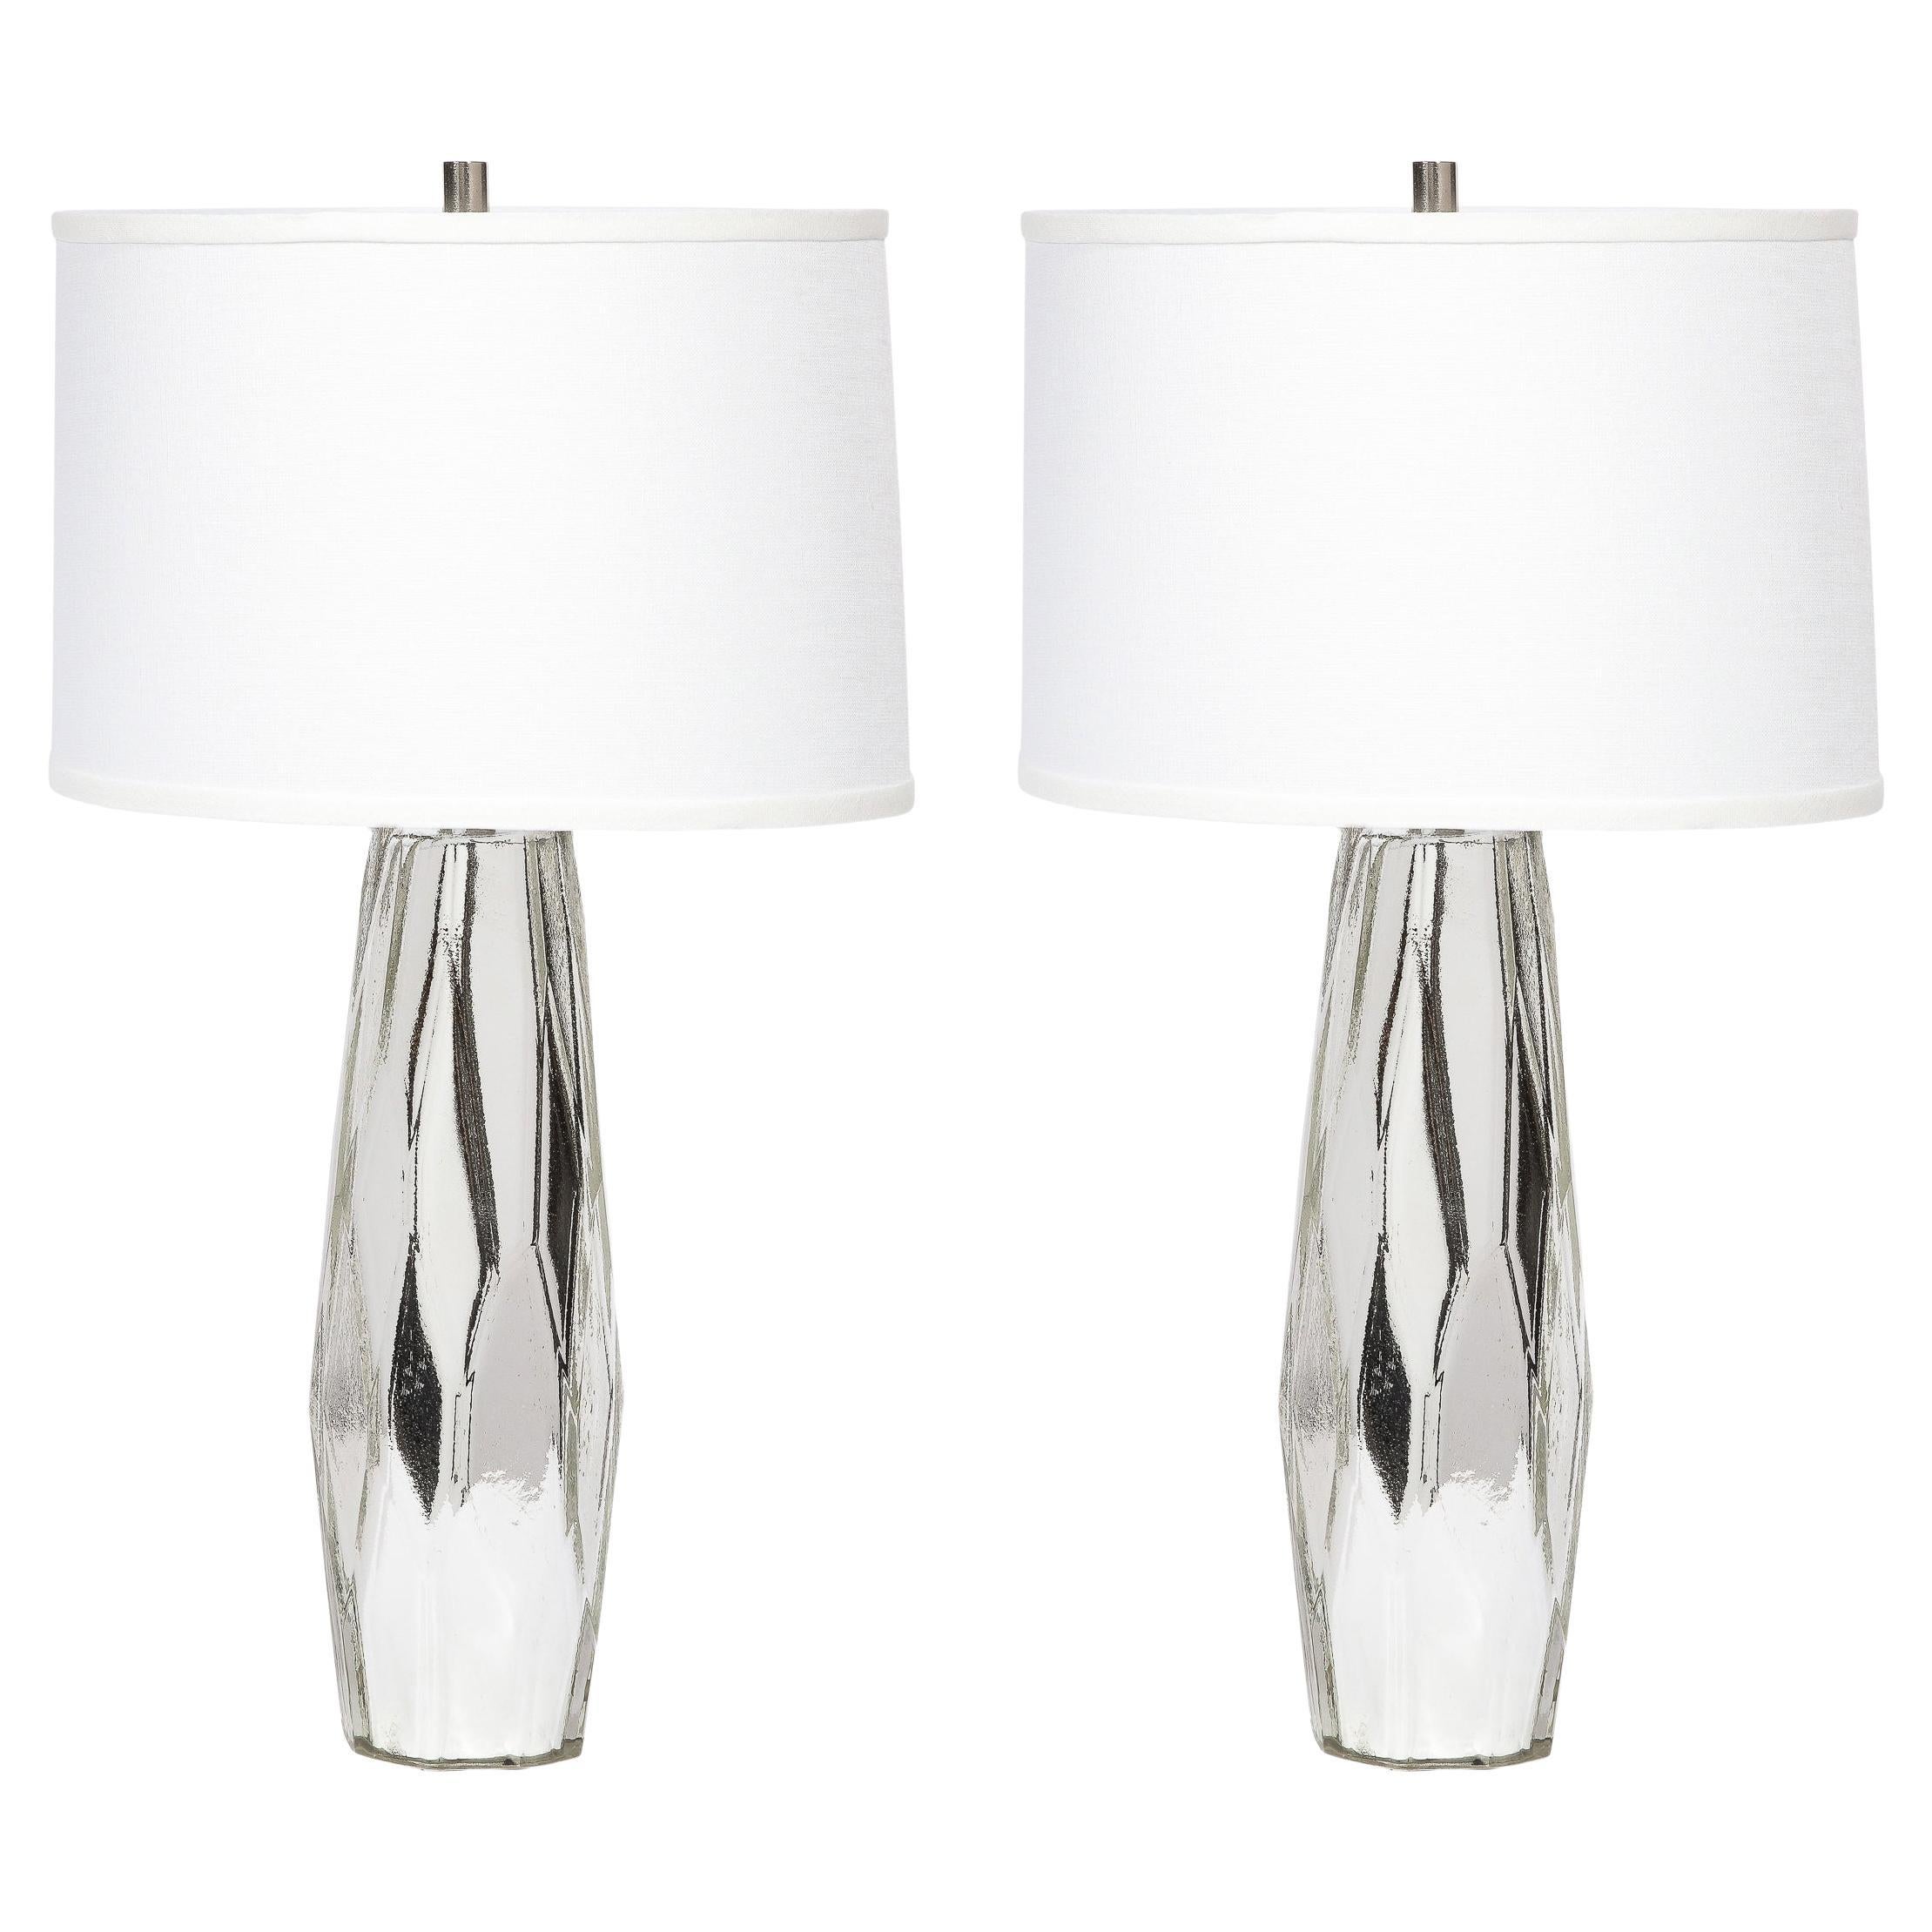 Lampes modernistes en verre mercuré blanc et or de Murano soufflé à la main